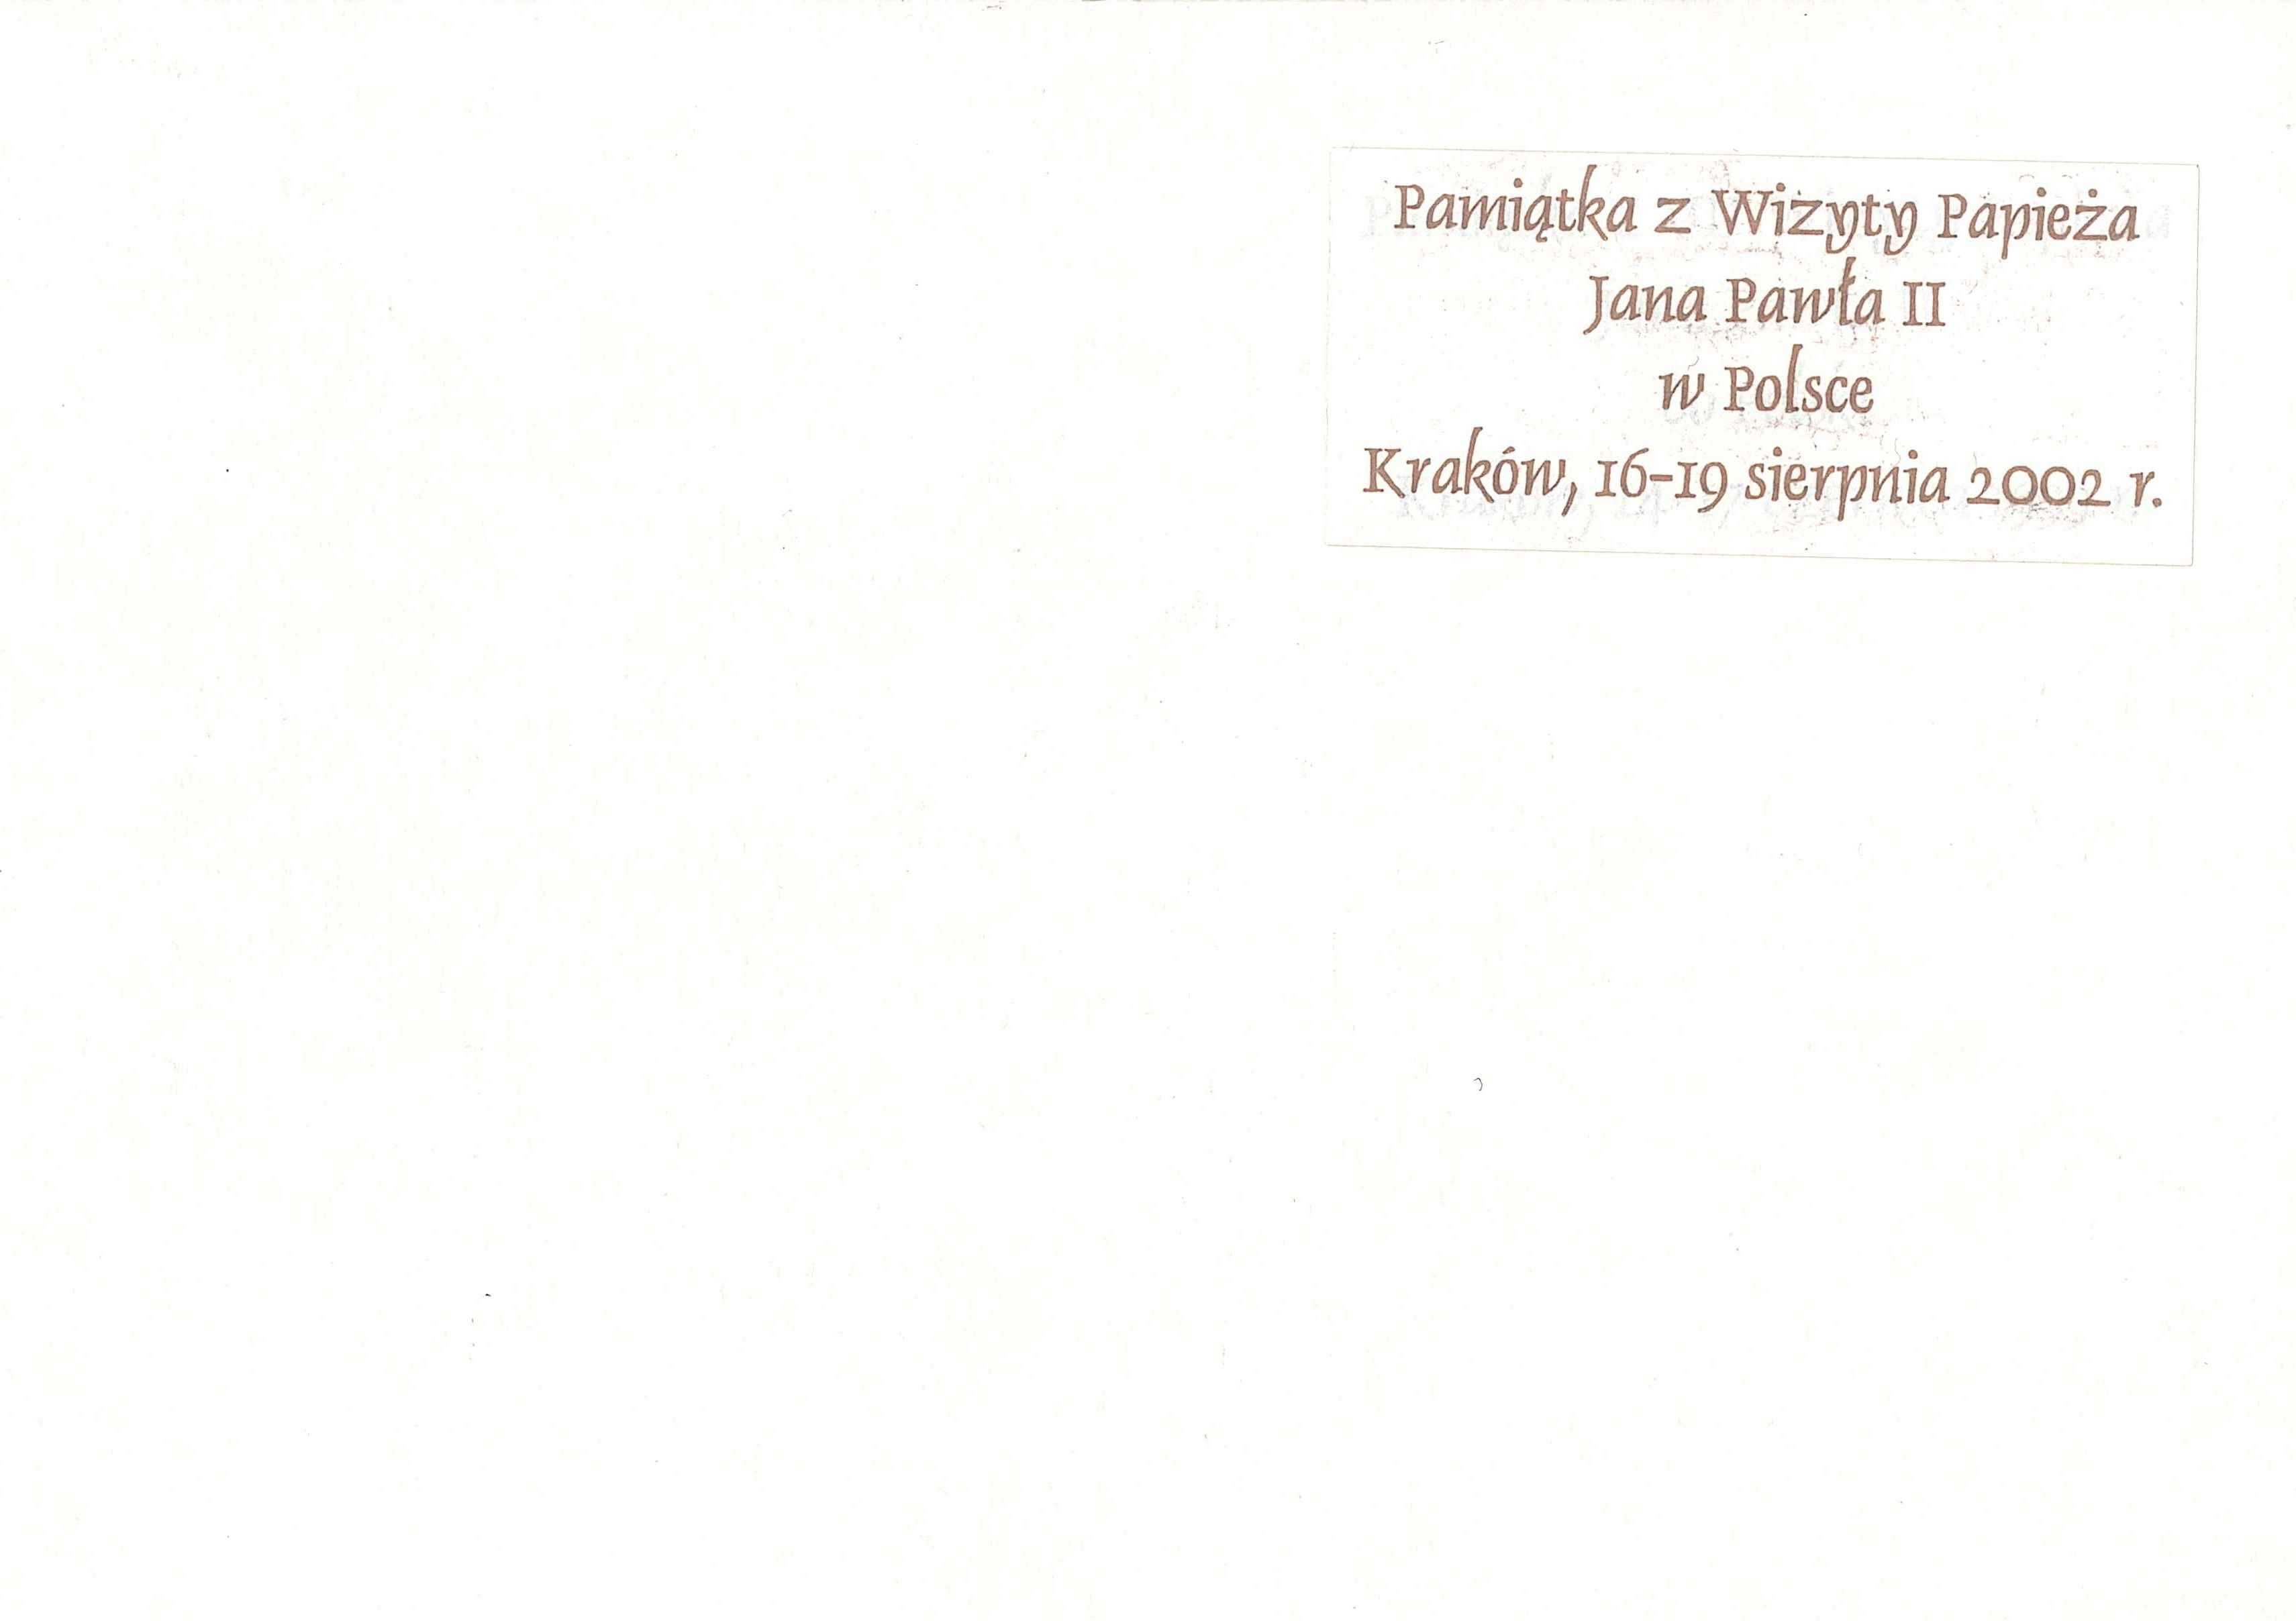 Pocztówka - Wizyta Papieża Jana Pawła II w Polsce. Kraków 2002